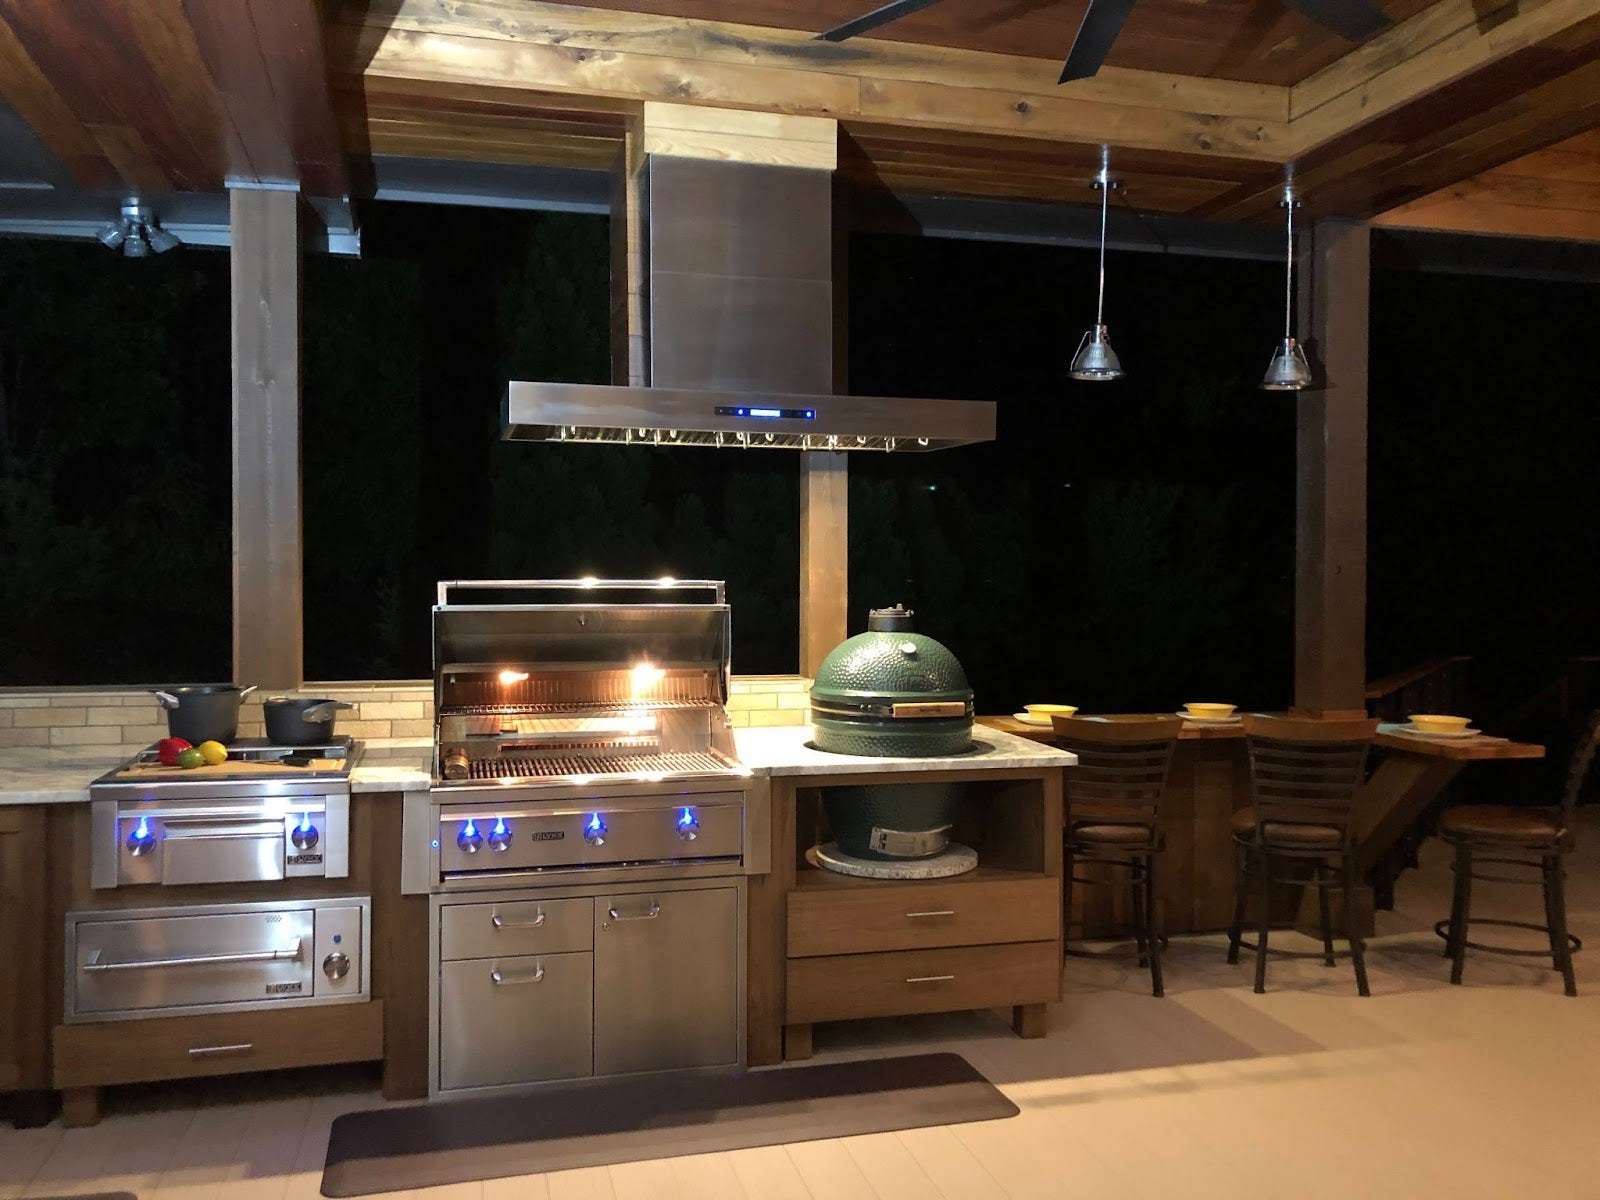 Proline range hood illuminating a cozy outdoor kitchen at night - prolinerangehoods.com